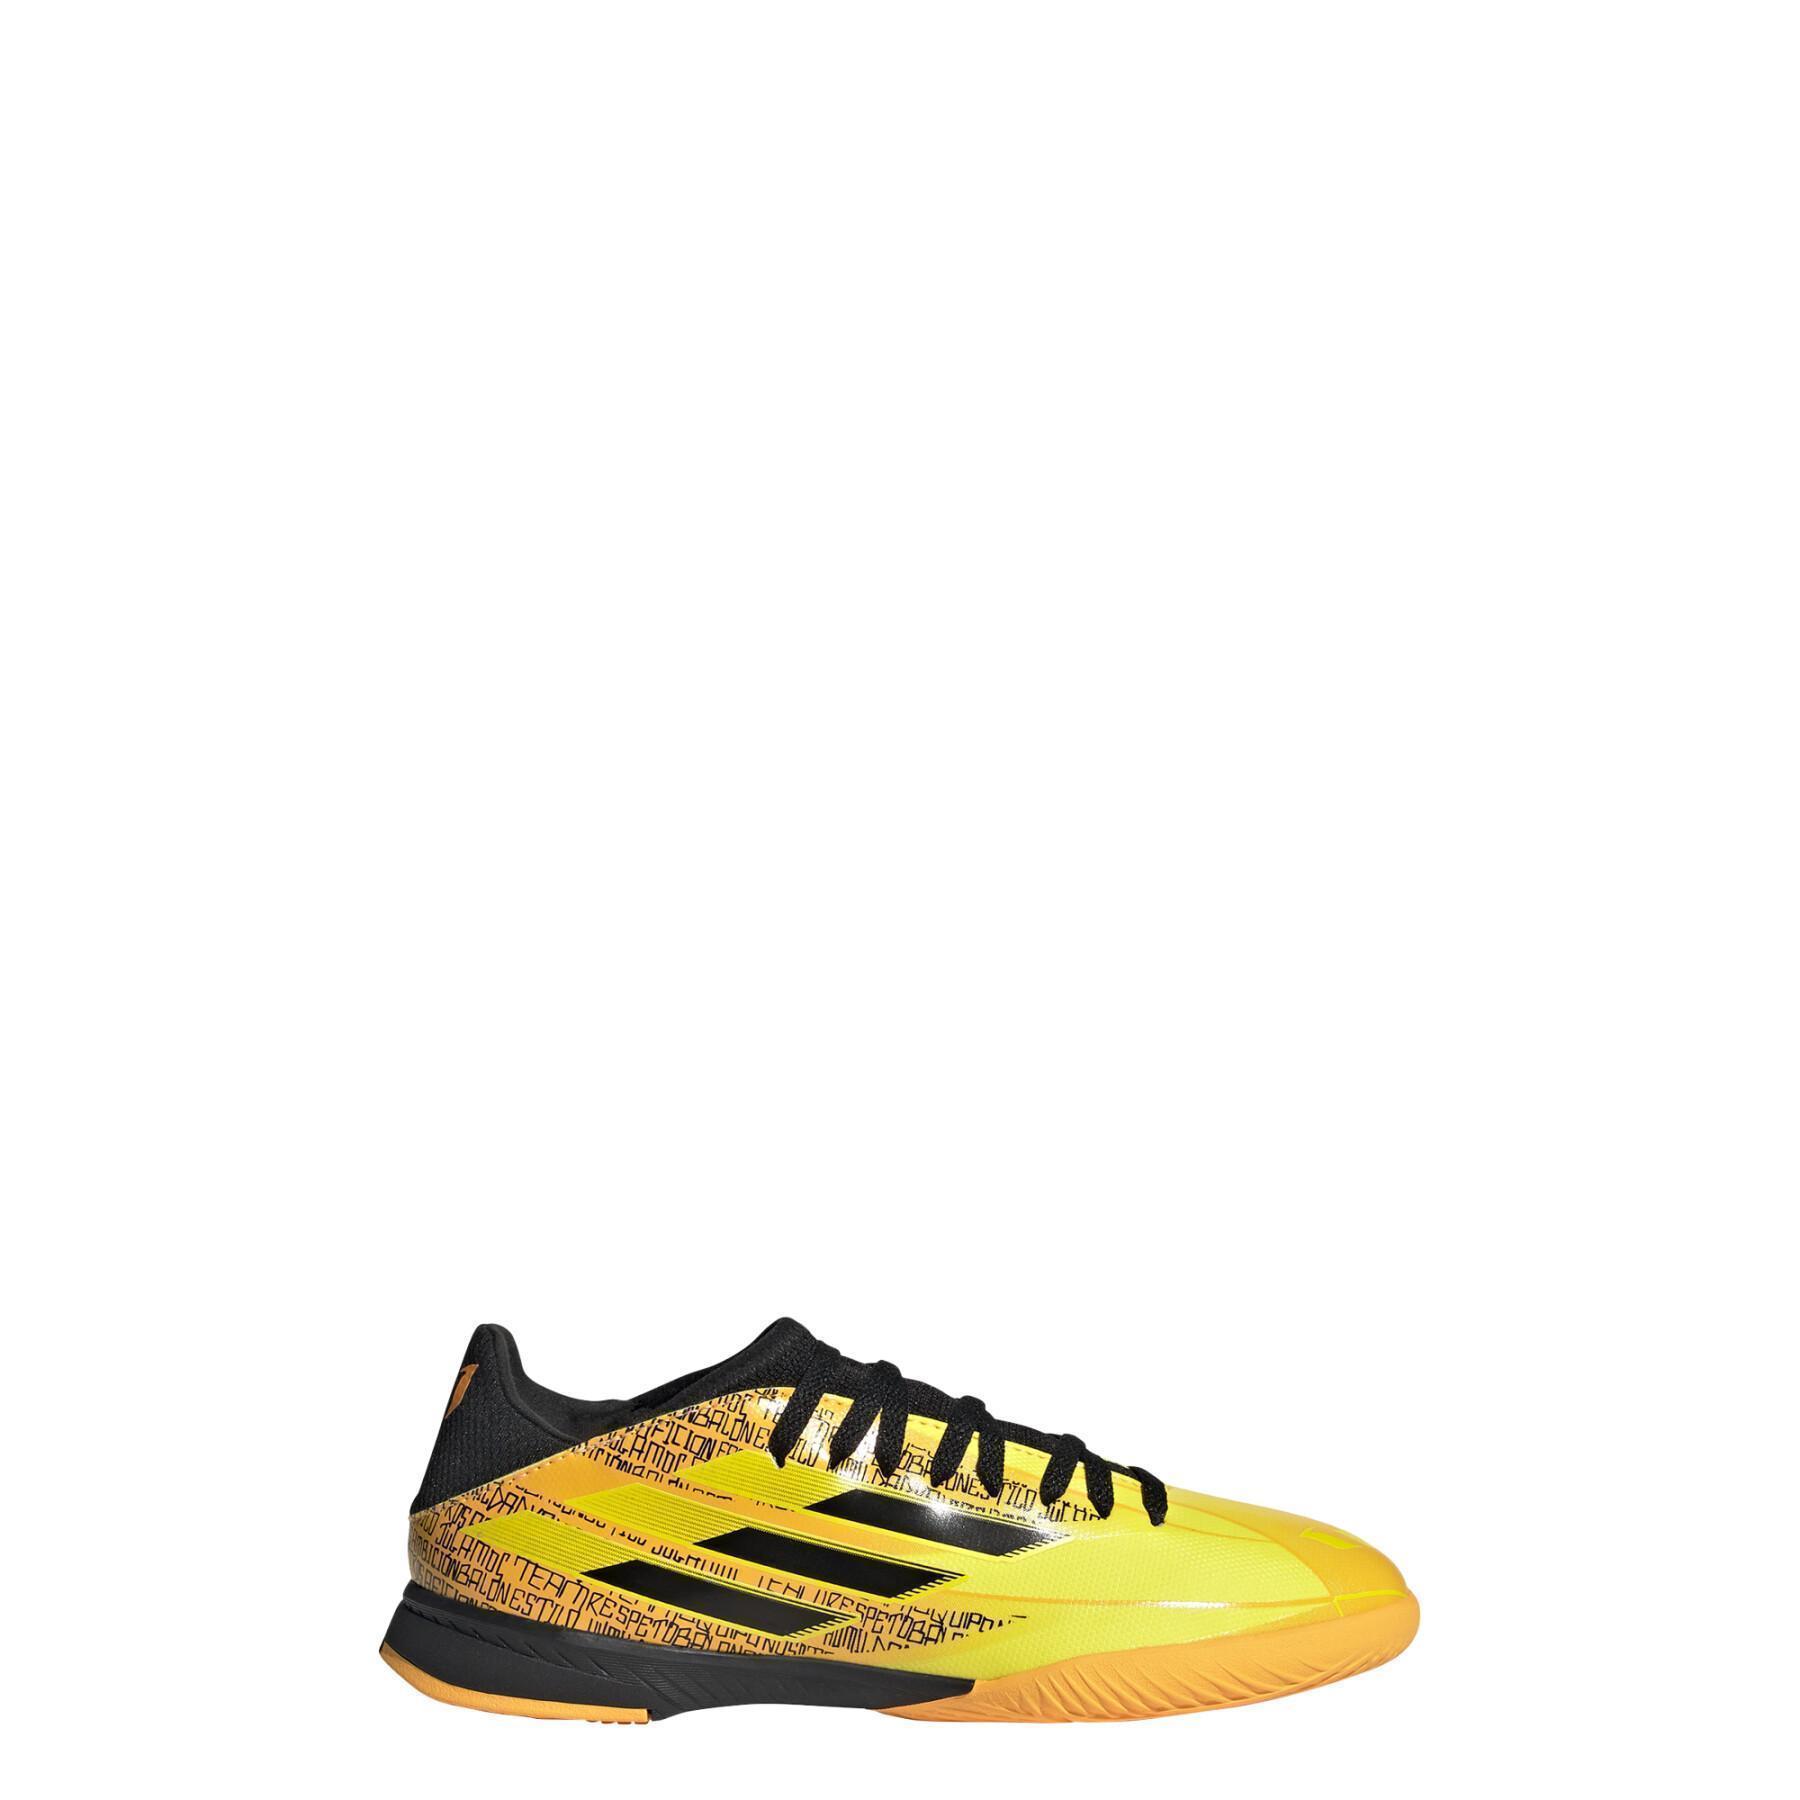 Kinder-Fußballschuhe adidas X Speedflow Messi.3 IN